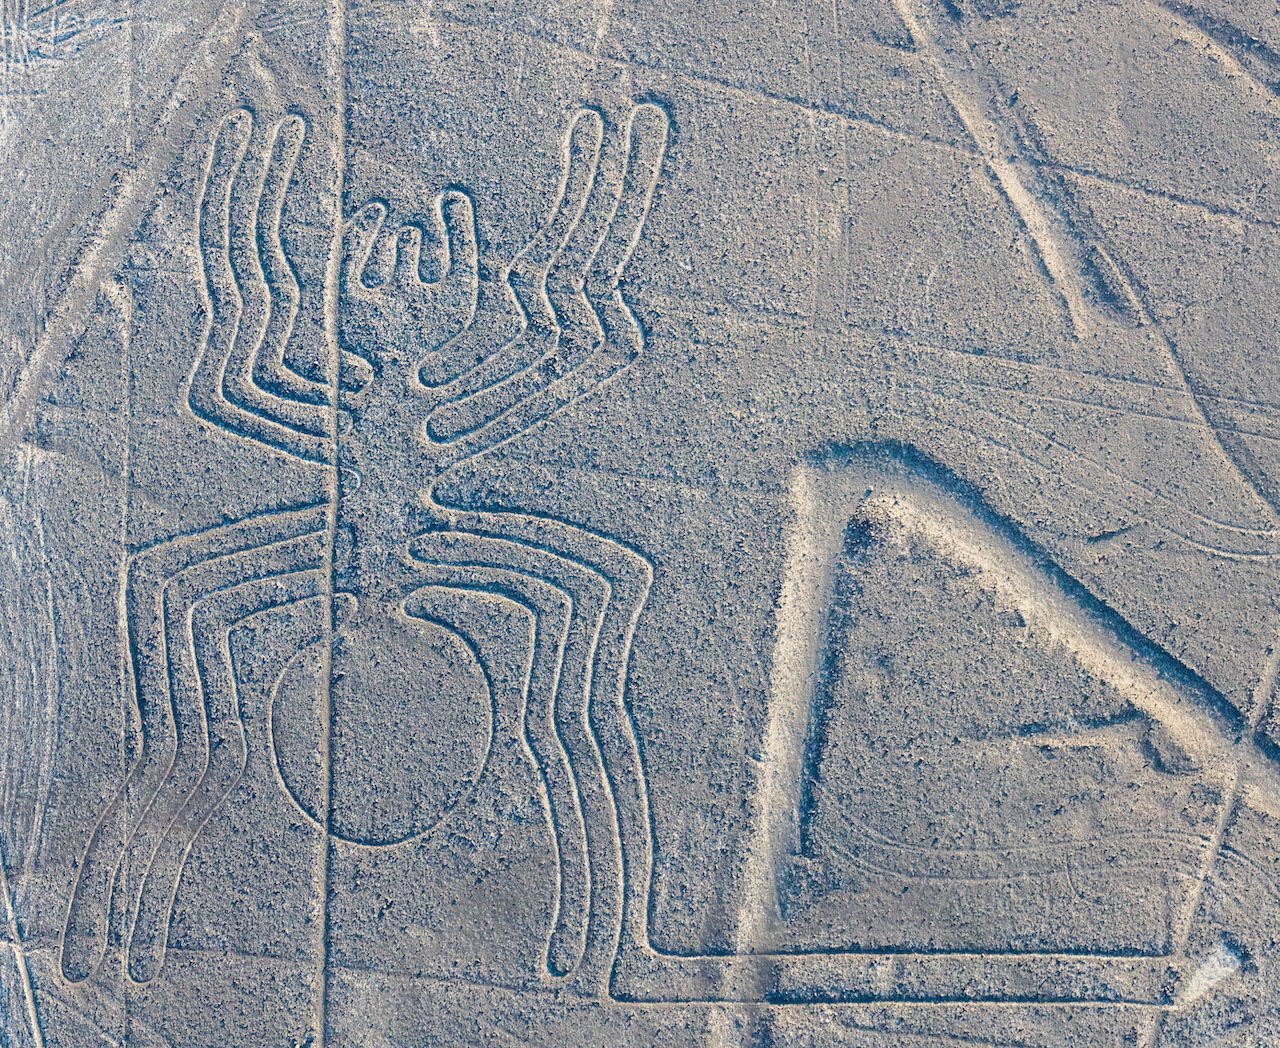 Así son las Líneas de Nazca: los misteriosos glifos que quedaron impresos  en el desierto peruano hace 1,700 años | National Geographic en Español